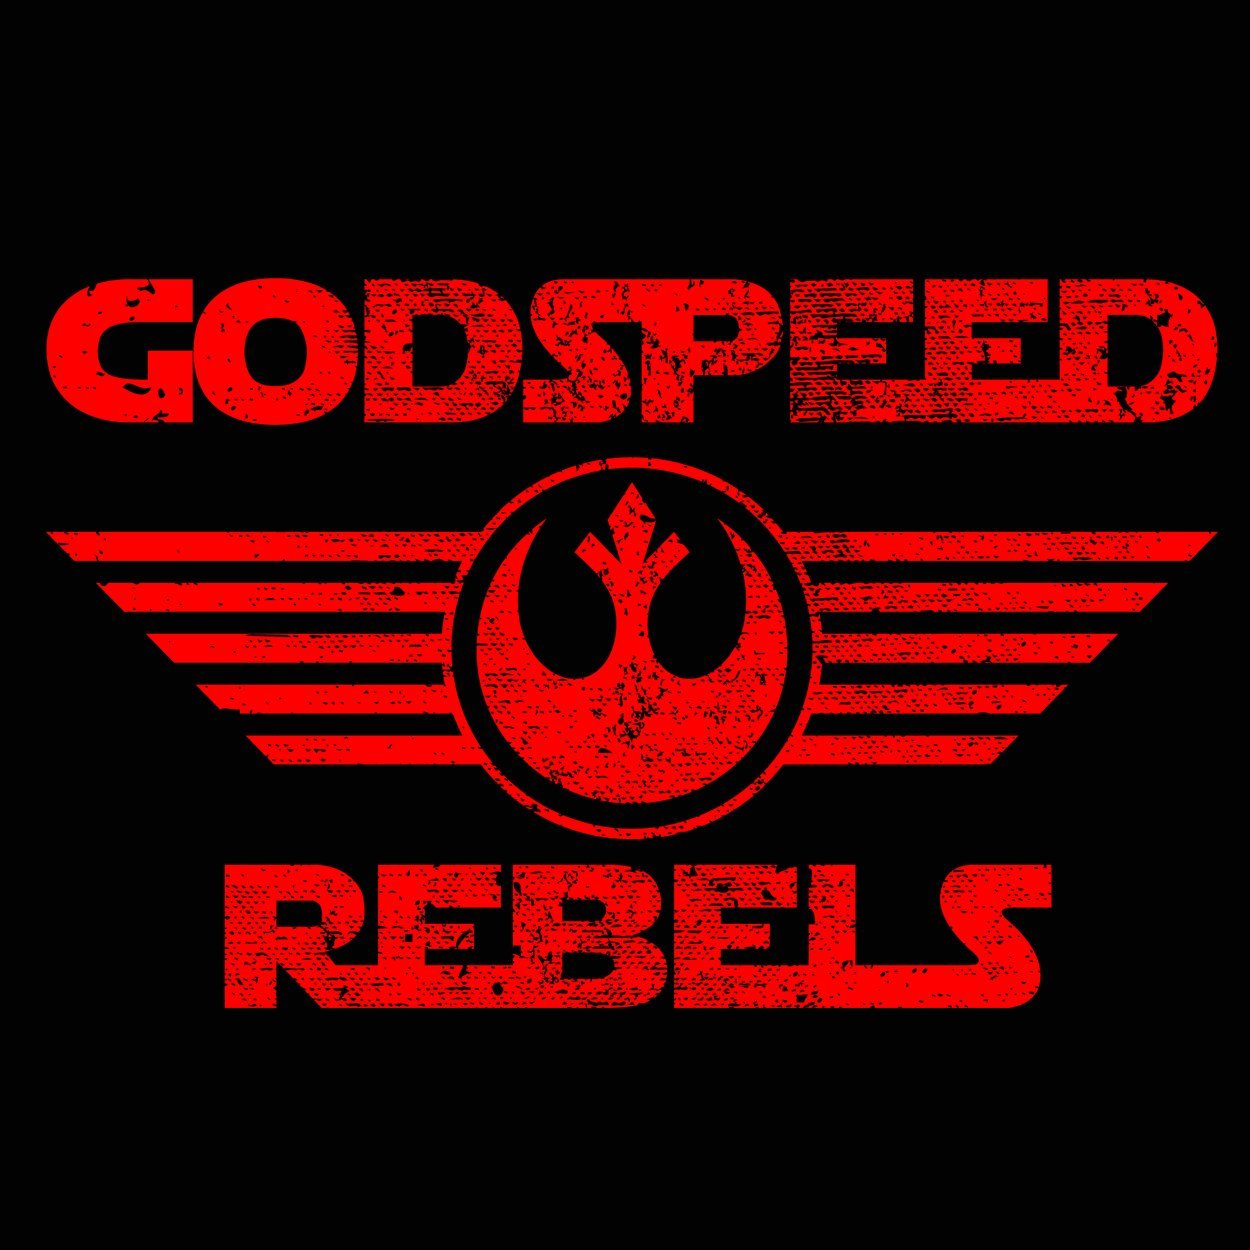 Godspeed Rebels Men's Tri-Blend T-Shirt